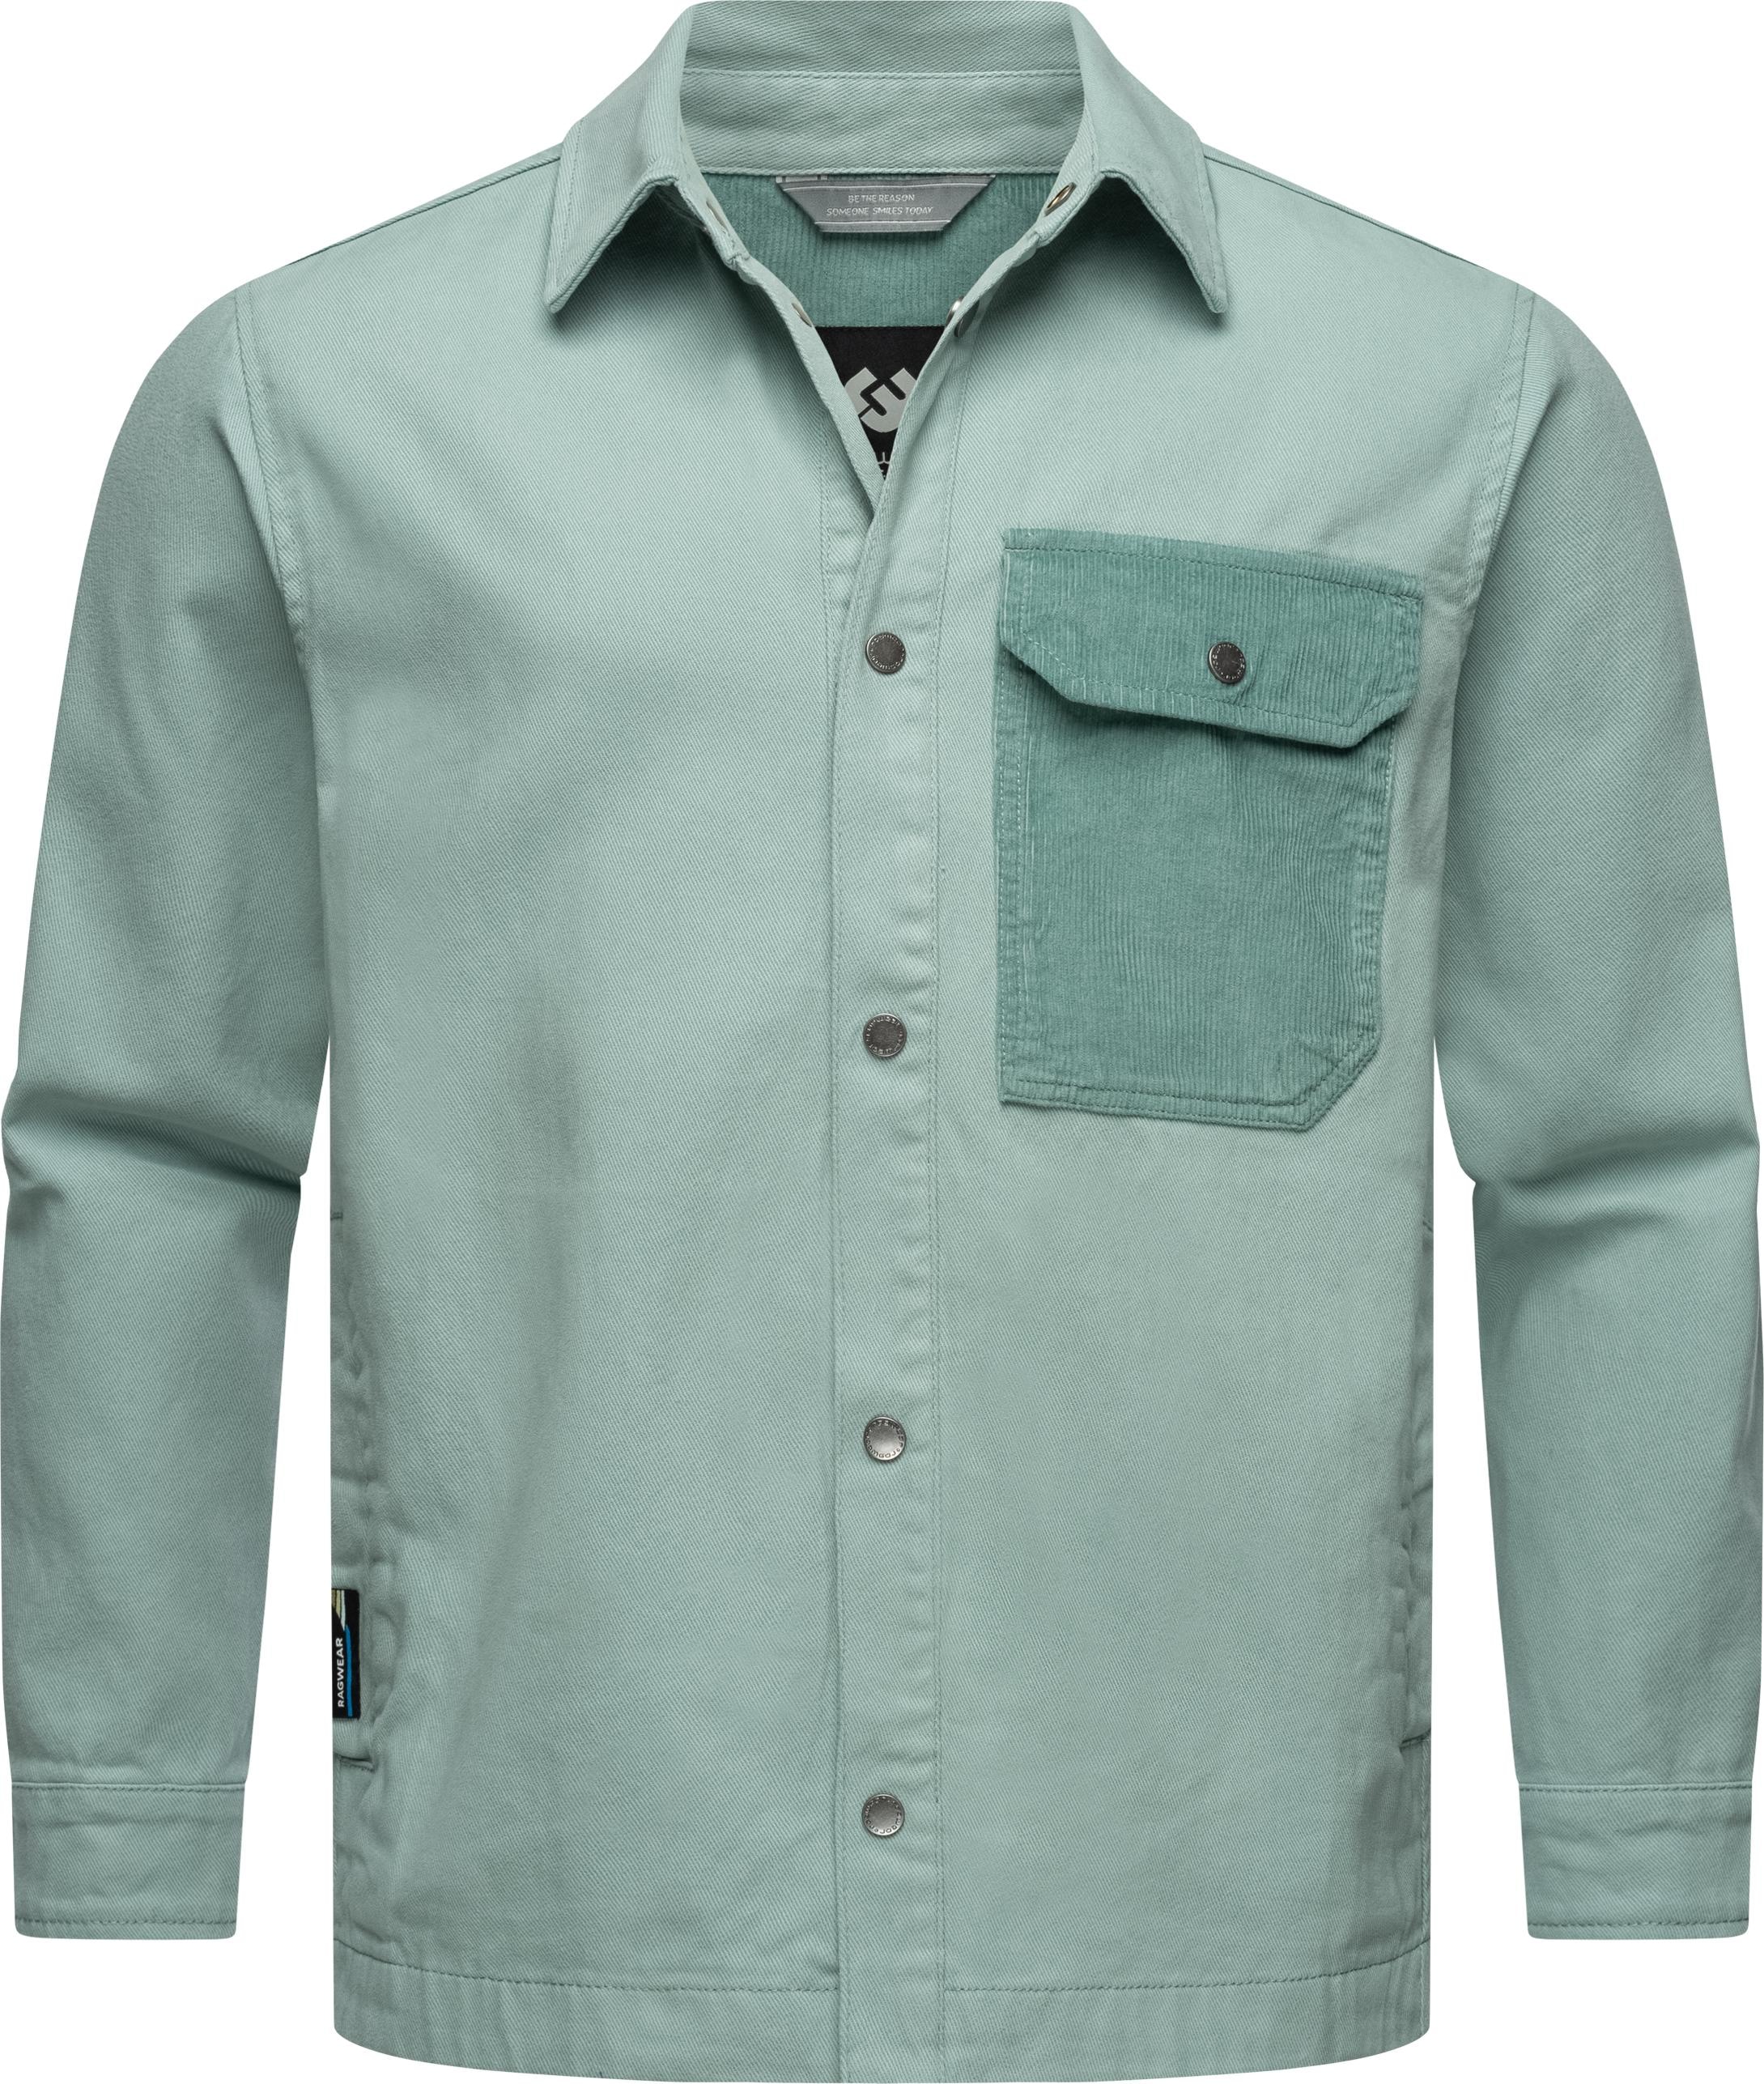 Outdoorhemd »Garwend«, Stylisches Herren Holzfällerhemd mit Brusttasche